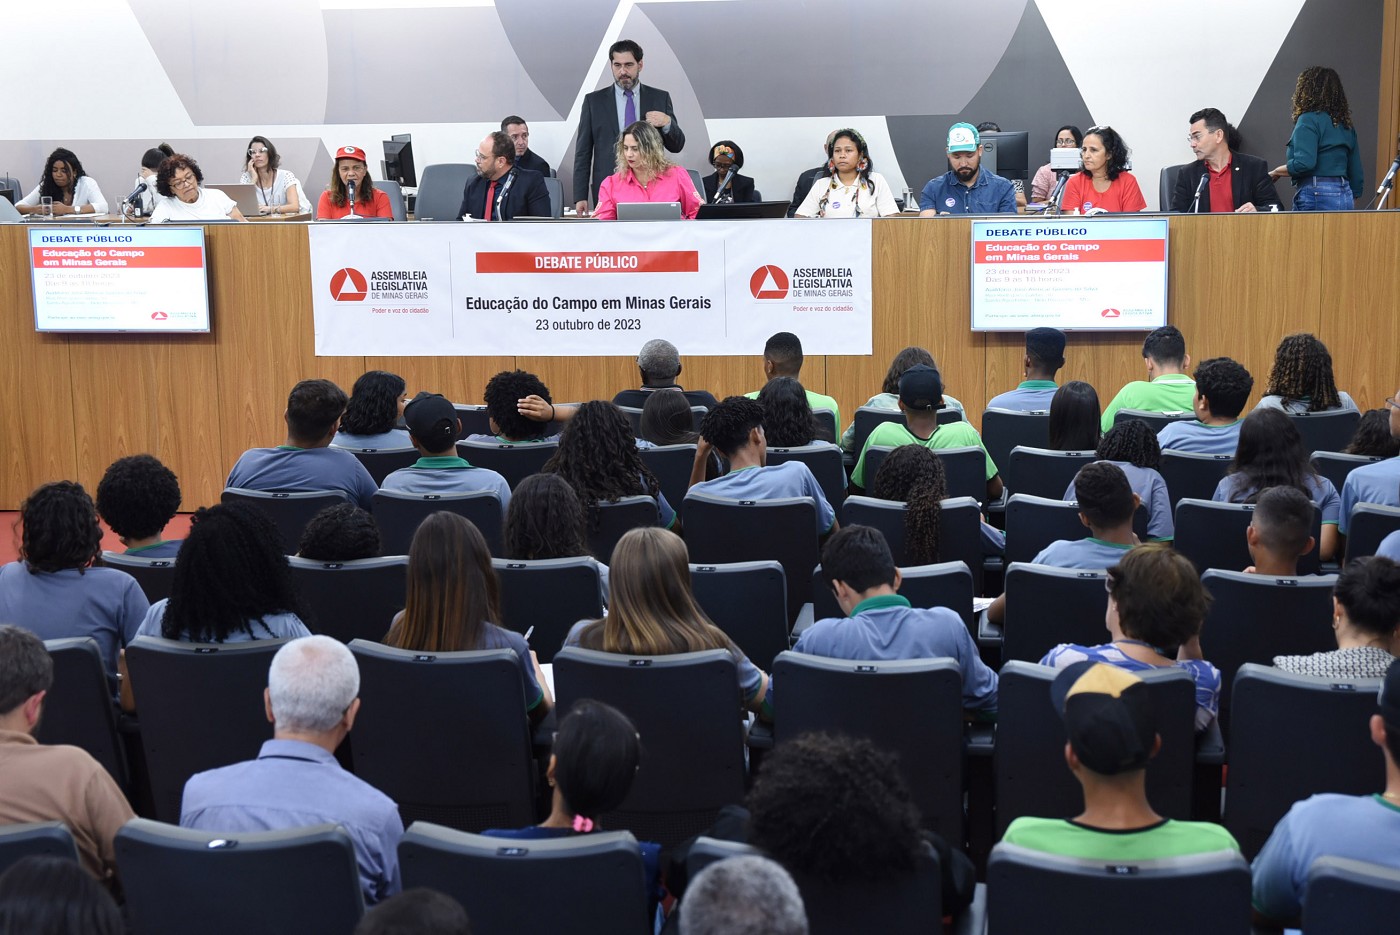 Debate público - Educação do Campo em Minas Gerais - Mesa 1 - Educação do campo - Contextualização e diversidade